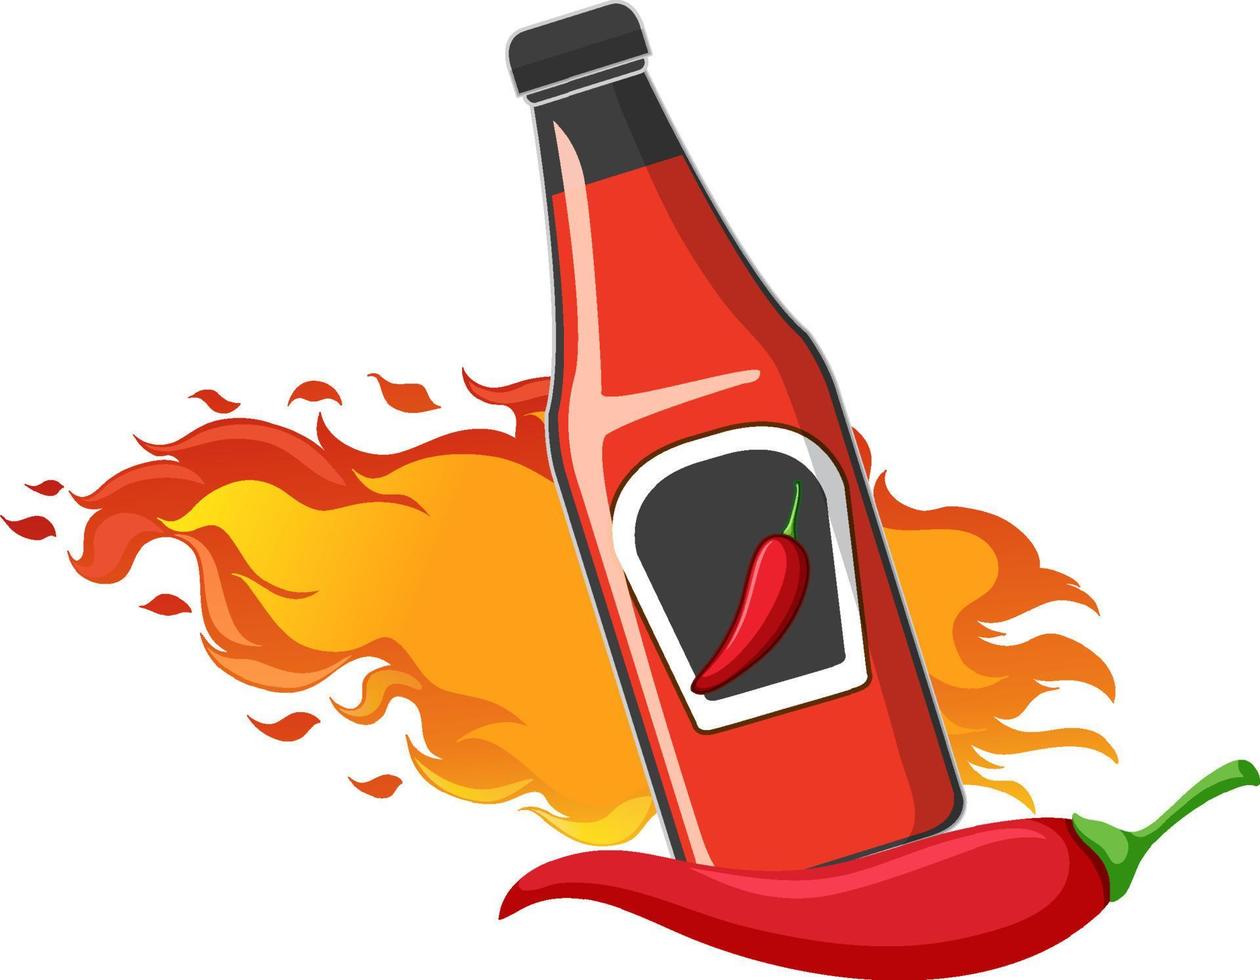 Chili-Sauce-Flasche im Cartoon-Stil vektor